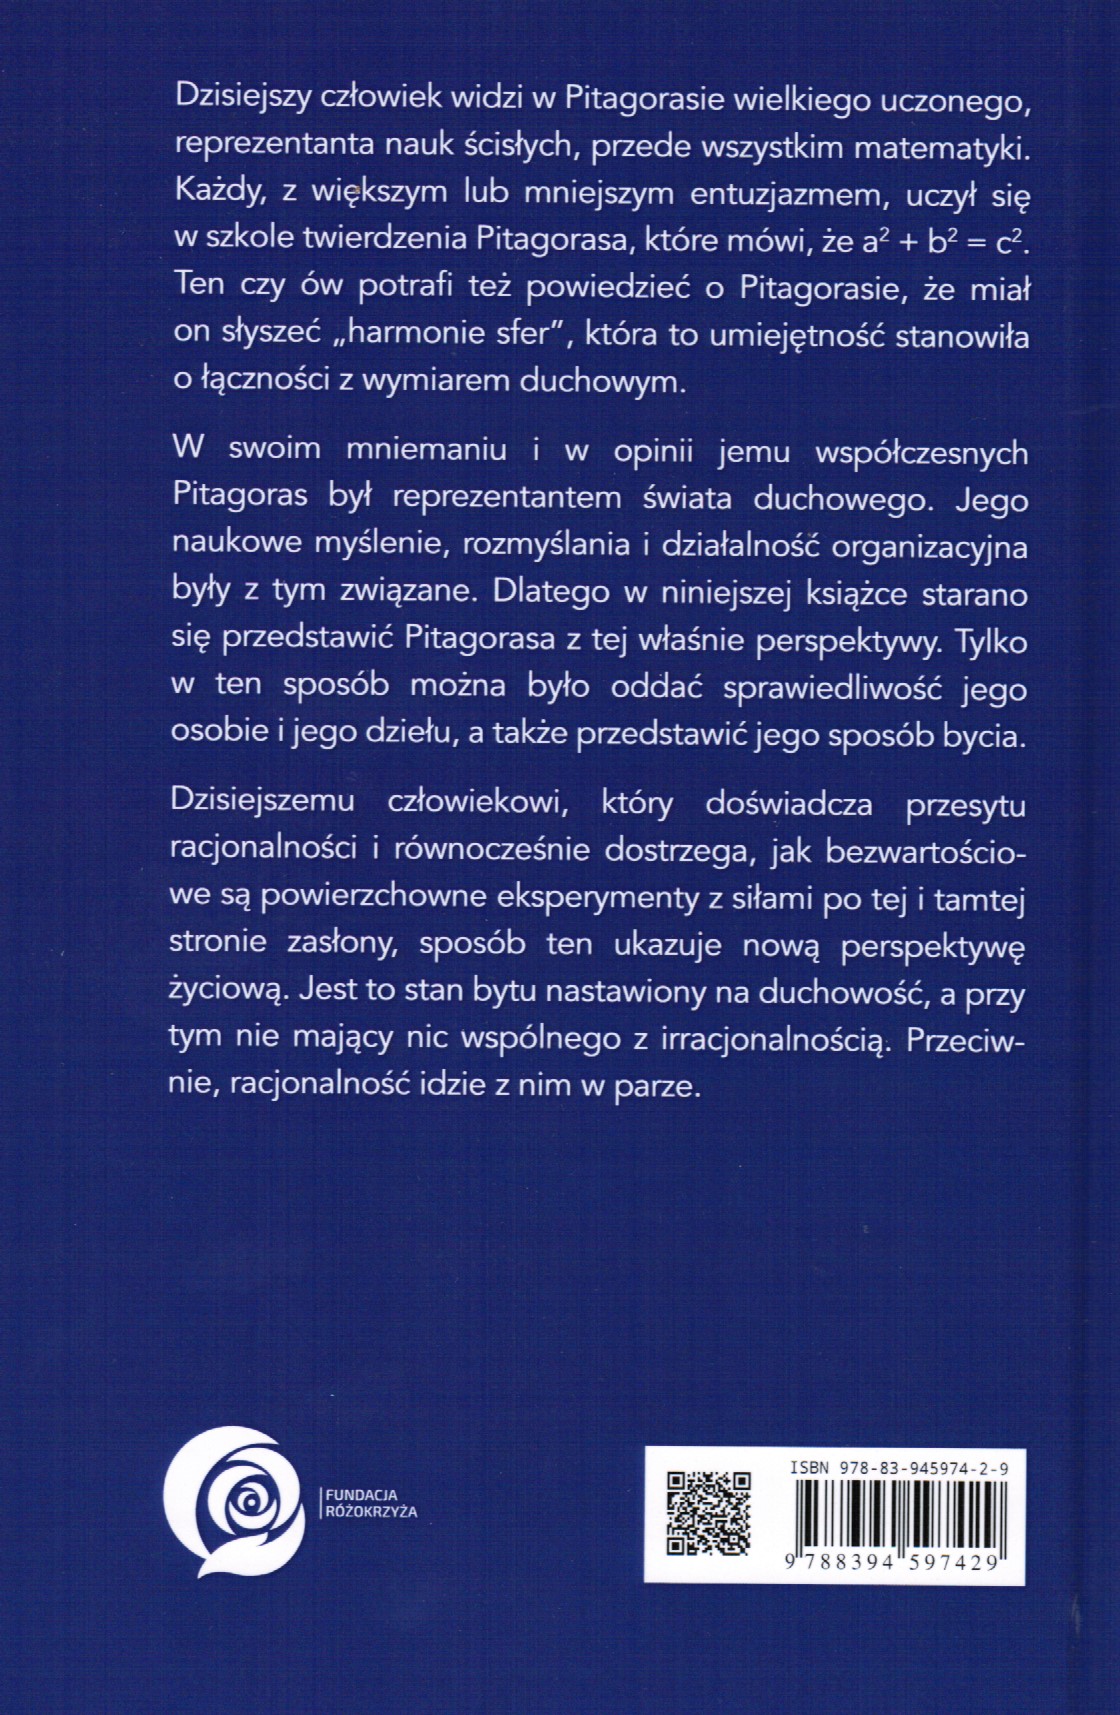 Pitagoras Duchowość - Nauka (Poln.)